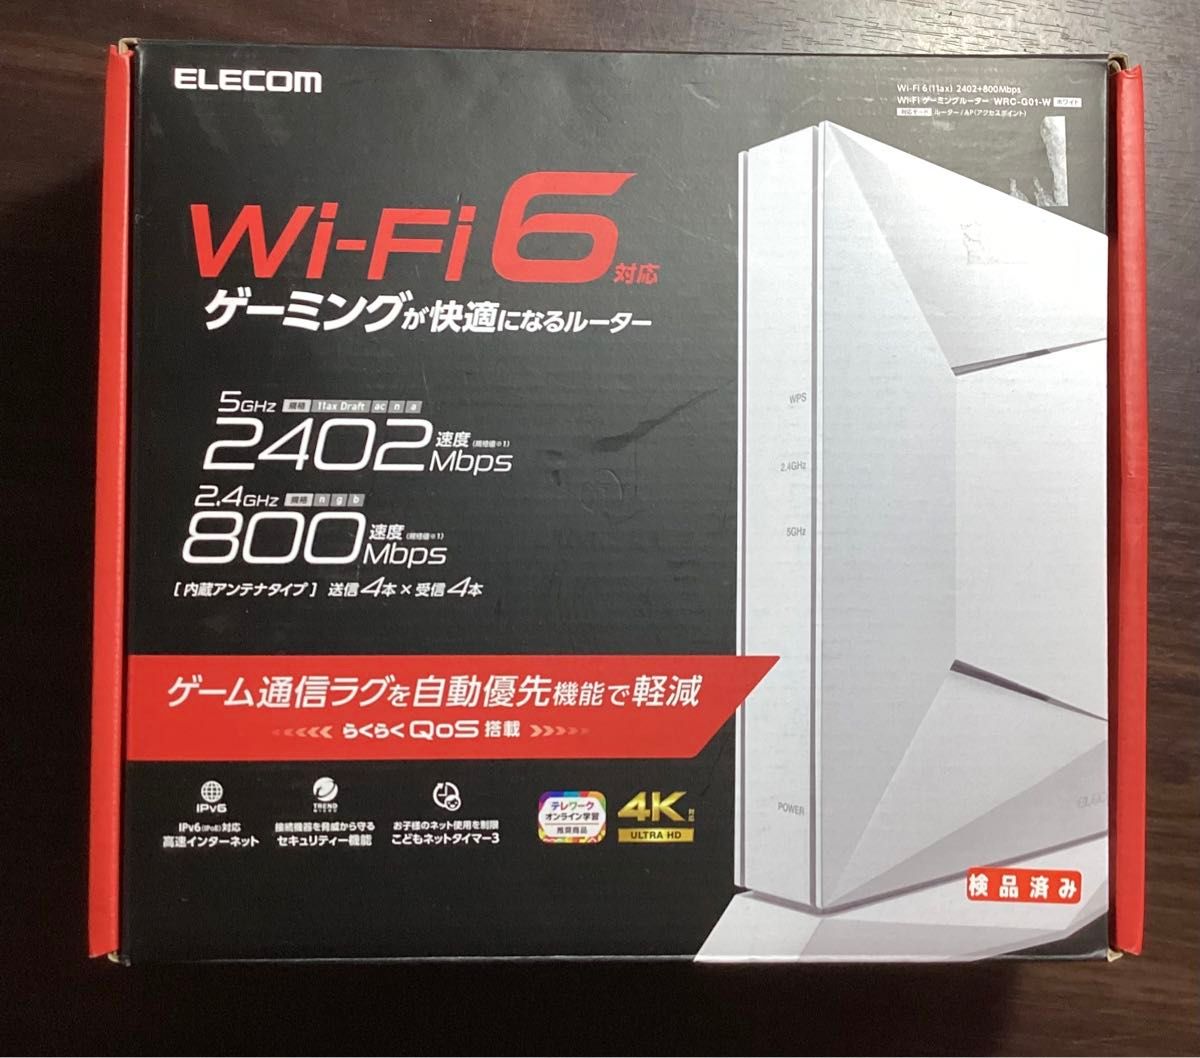 Wi-Fi 6(11ax) 2402+800Mbps Wi-Fi ゲーミングルーター WRC-G01-W /中古/動作済み